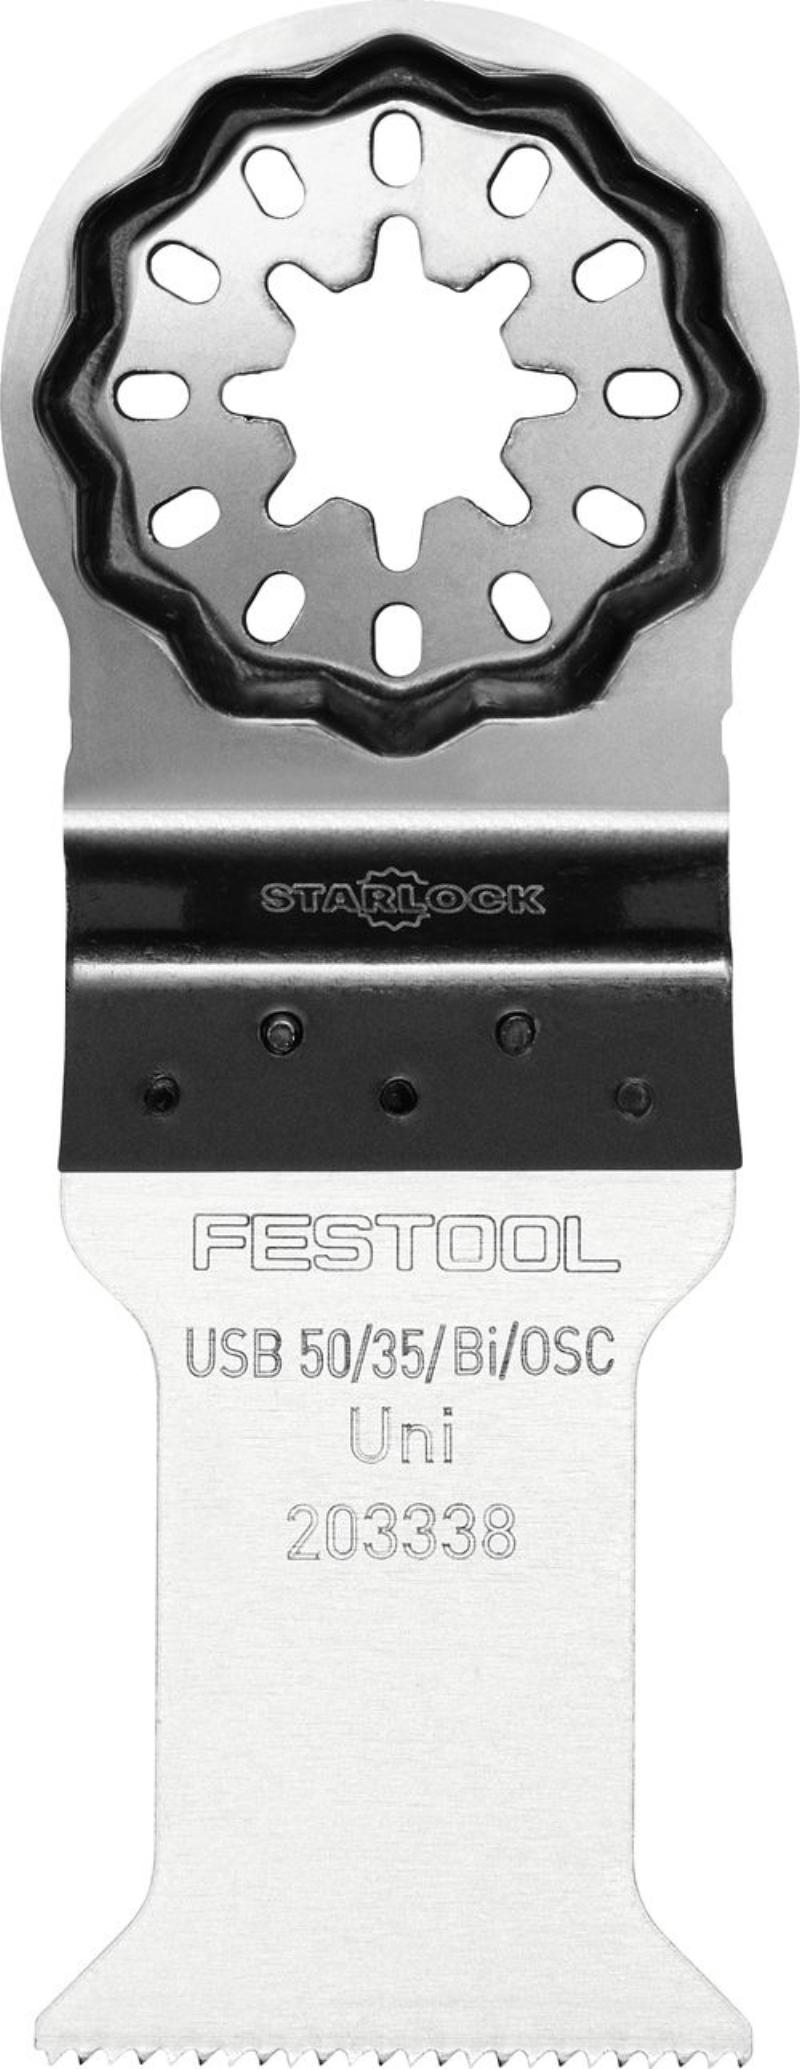 Festool Universalsågblad USB 50/35/Bi/OSC, 1 st